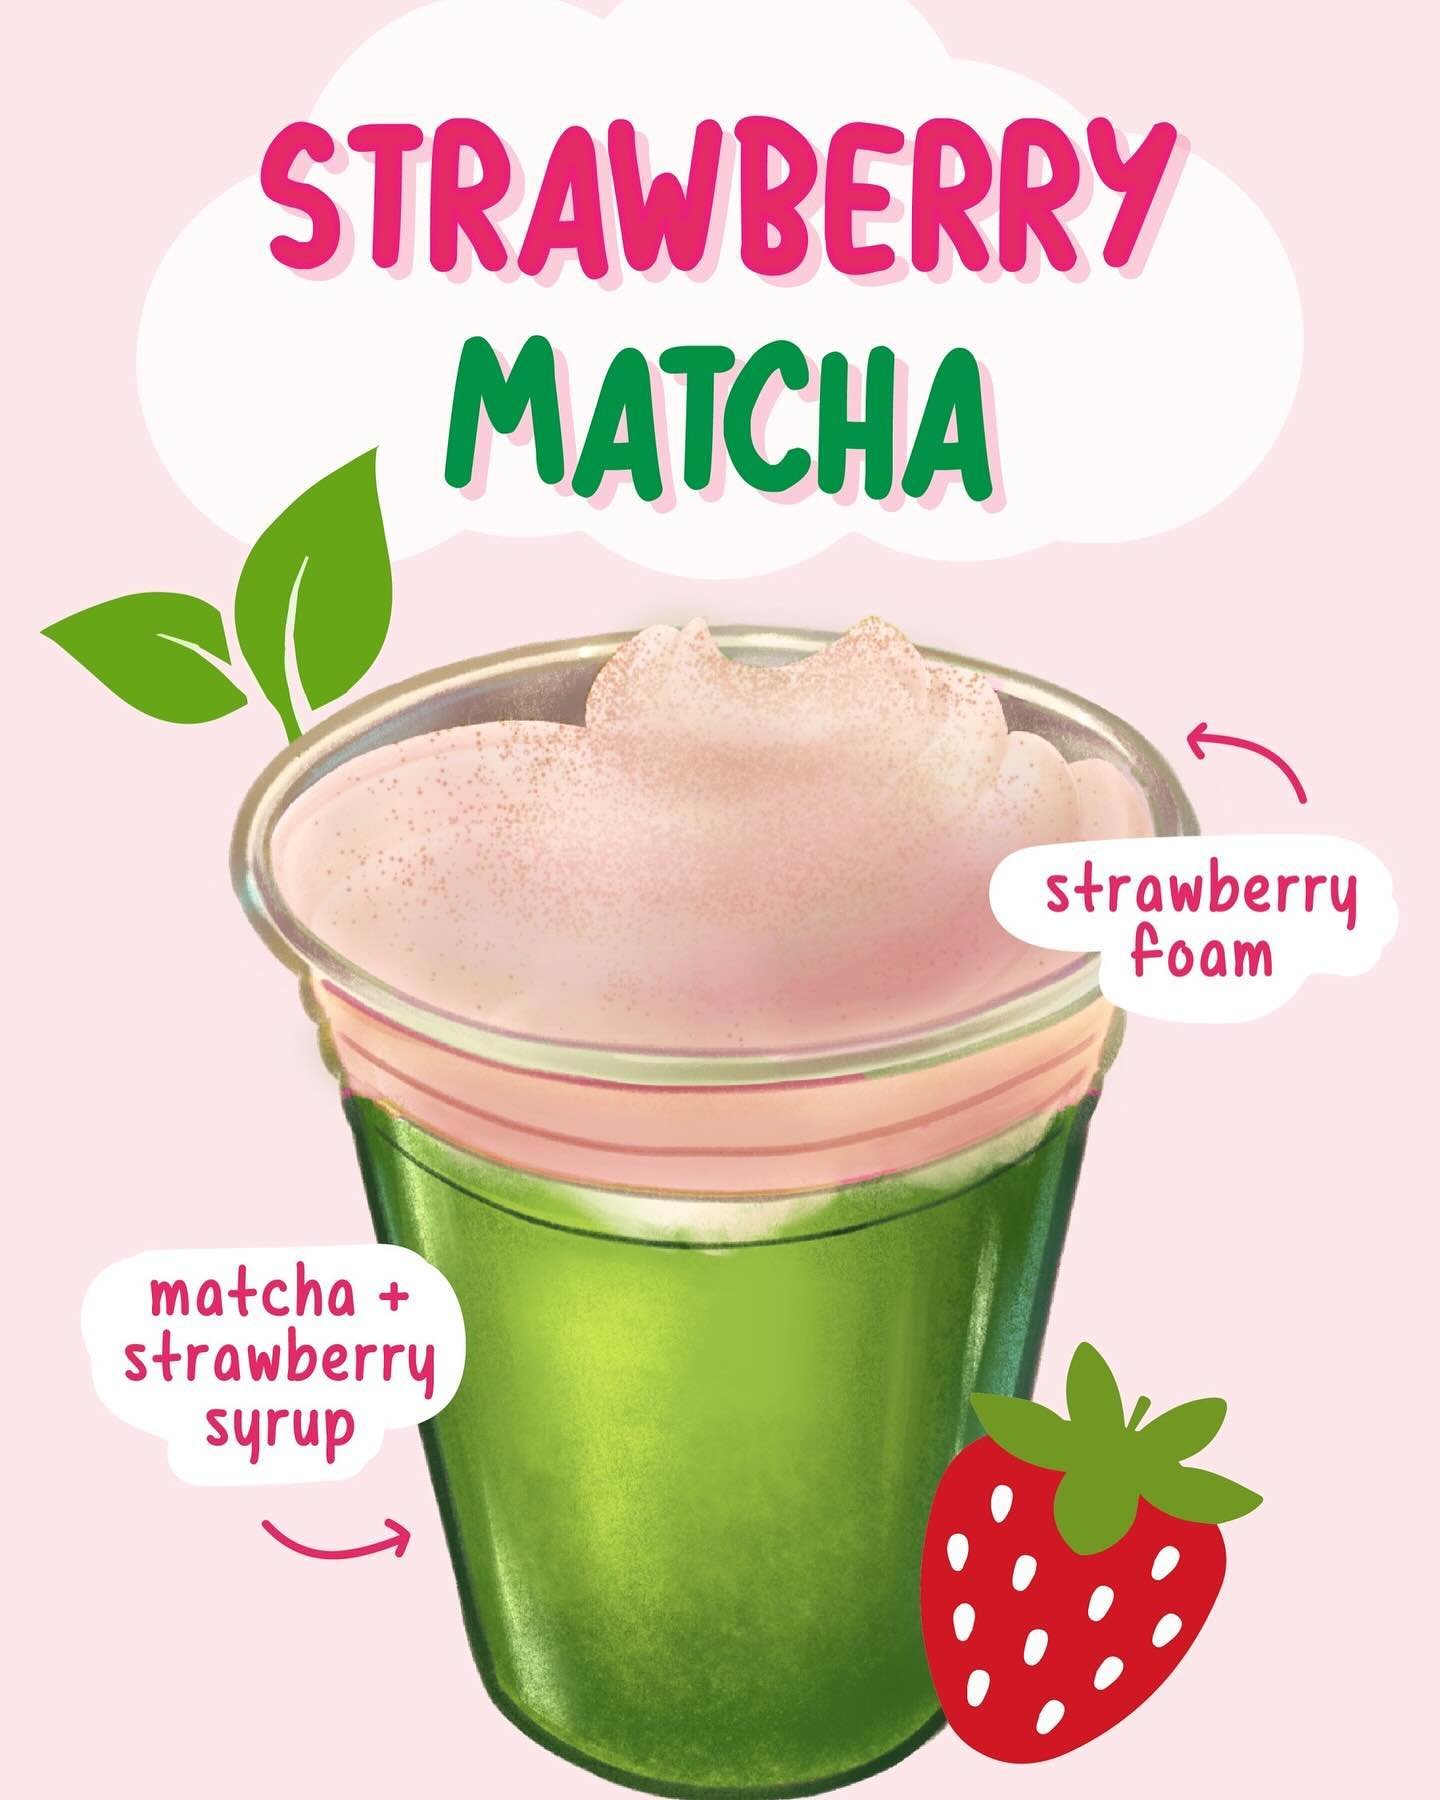 Aloha matcha lover 🙋&zwj;♀️
We have new matcha drink !! 
🍓 Strawberry Matcha 🍵 
&bull;Matcha latte with strawberry syrup and strawberry foam on top!! 
 
Please visit to get new drink 🥤 

#okayamakobohawaii #okayamakobohonolulu #matcha #matchalatt